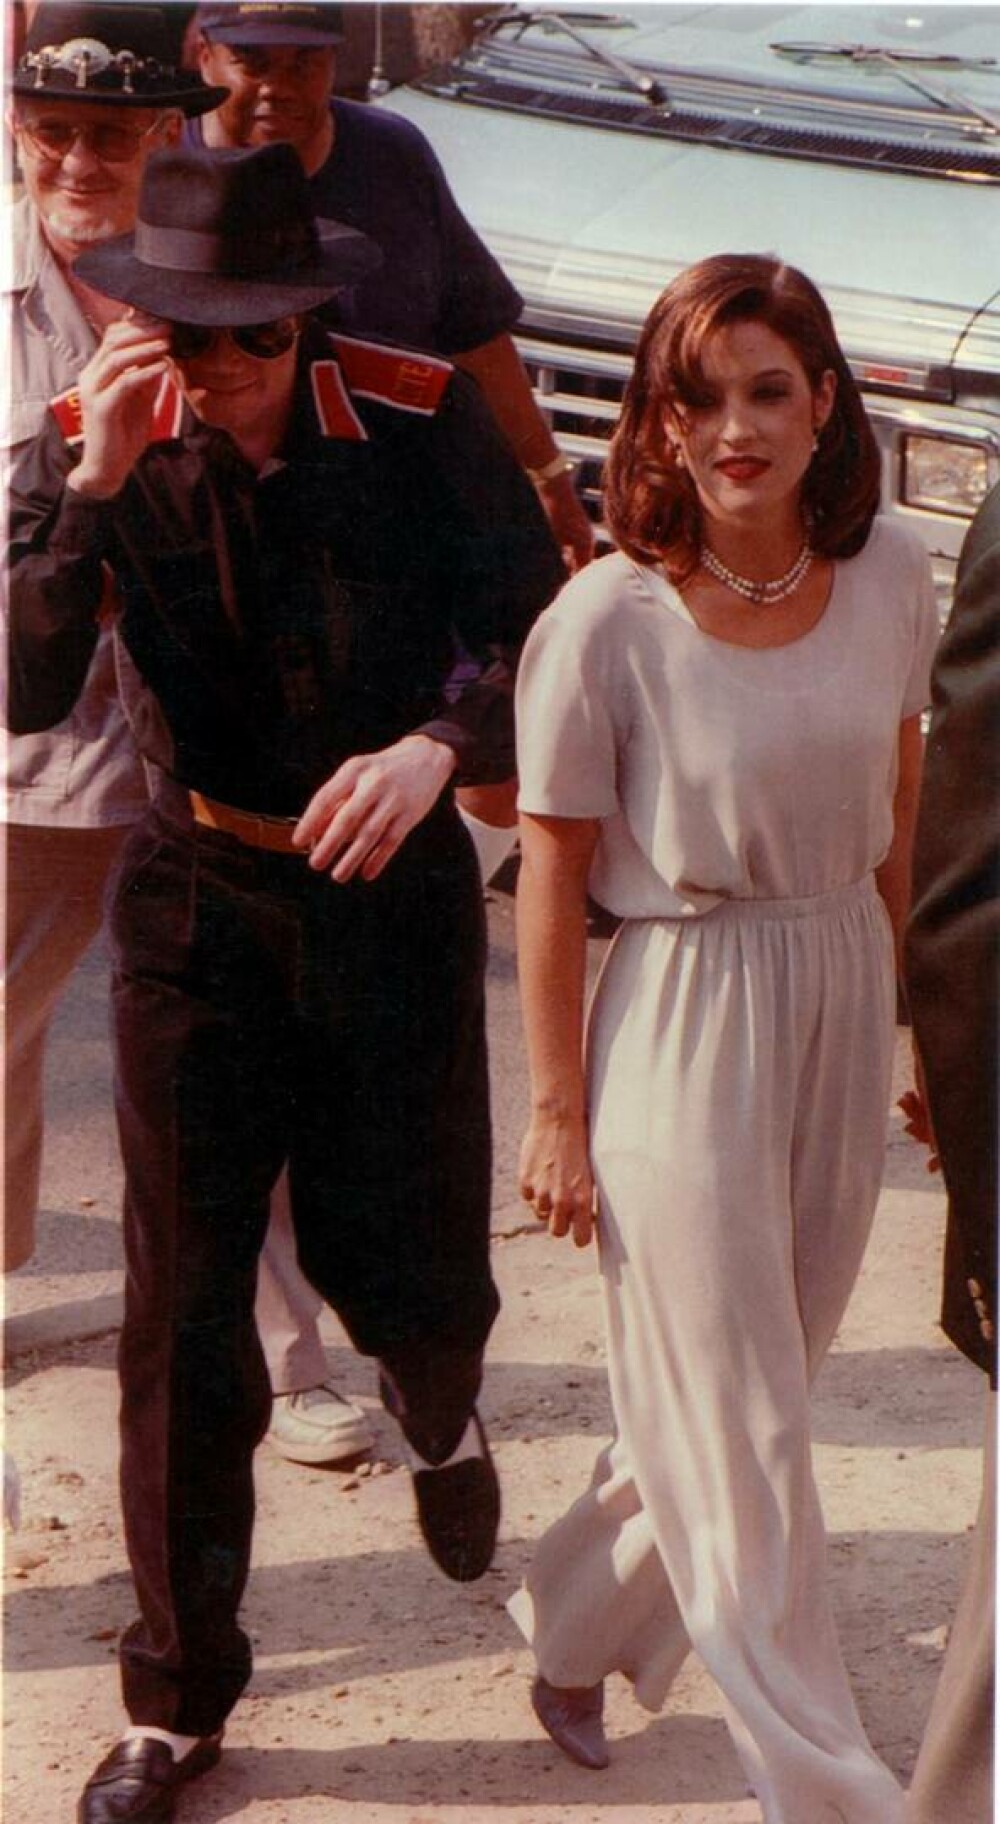 Se împlinesc 30 de ani de când Michael Jackson și Lisa Marie Presley s-au căsătorit în secret. GALERIE FOTO - Imaginea 16